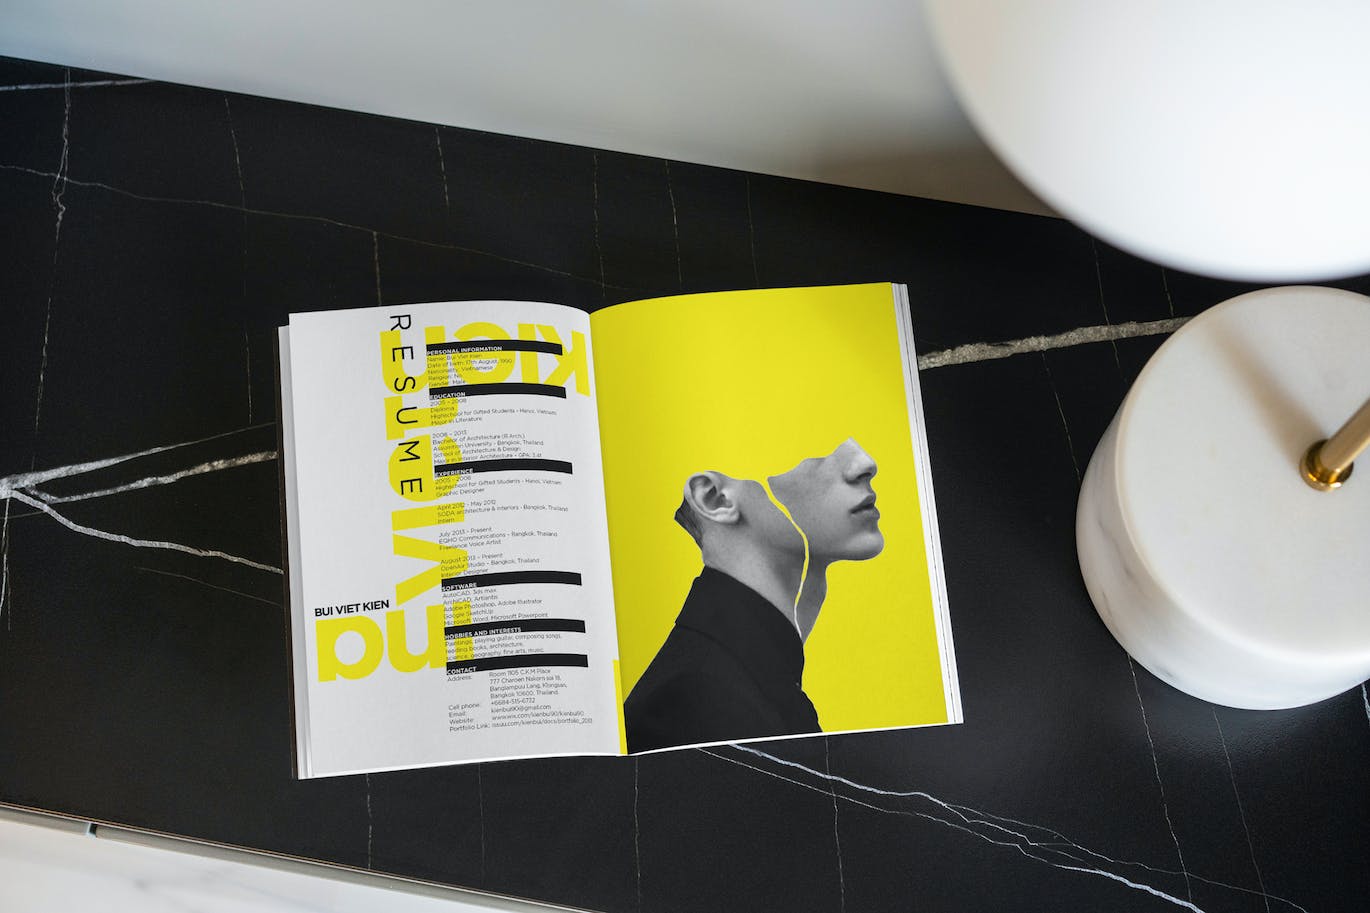 竖版宣传册杂志效果图样机 Vertical Brochure Mockups 样机素材 第6张